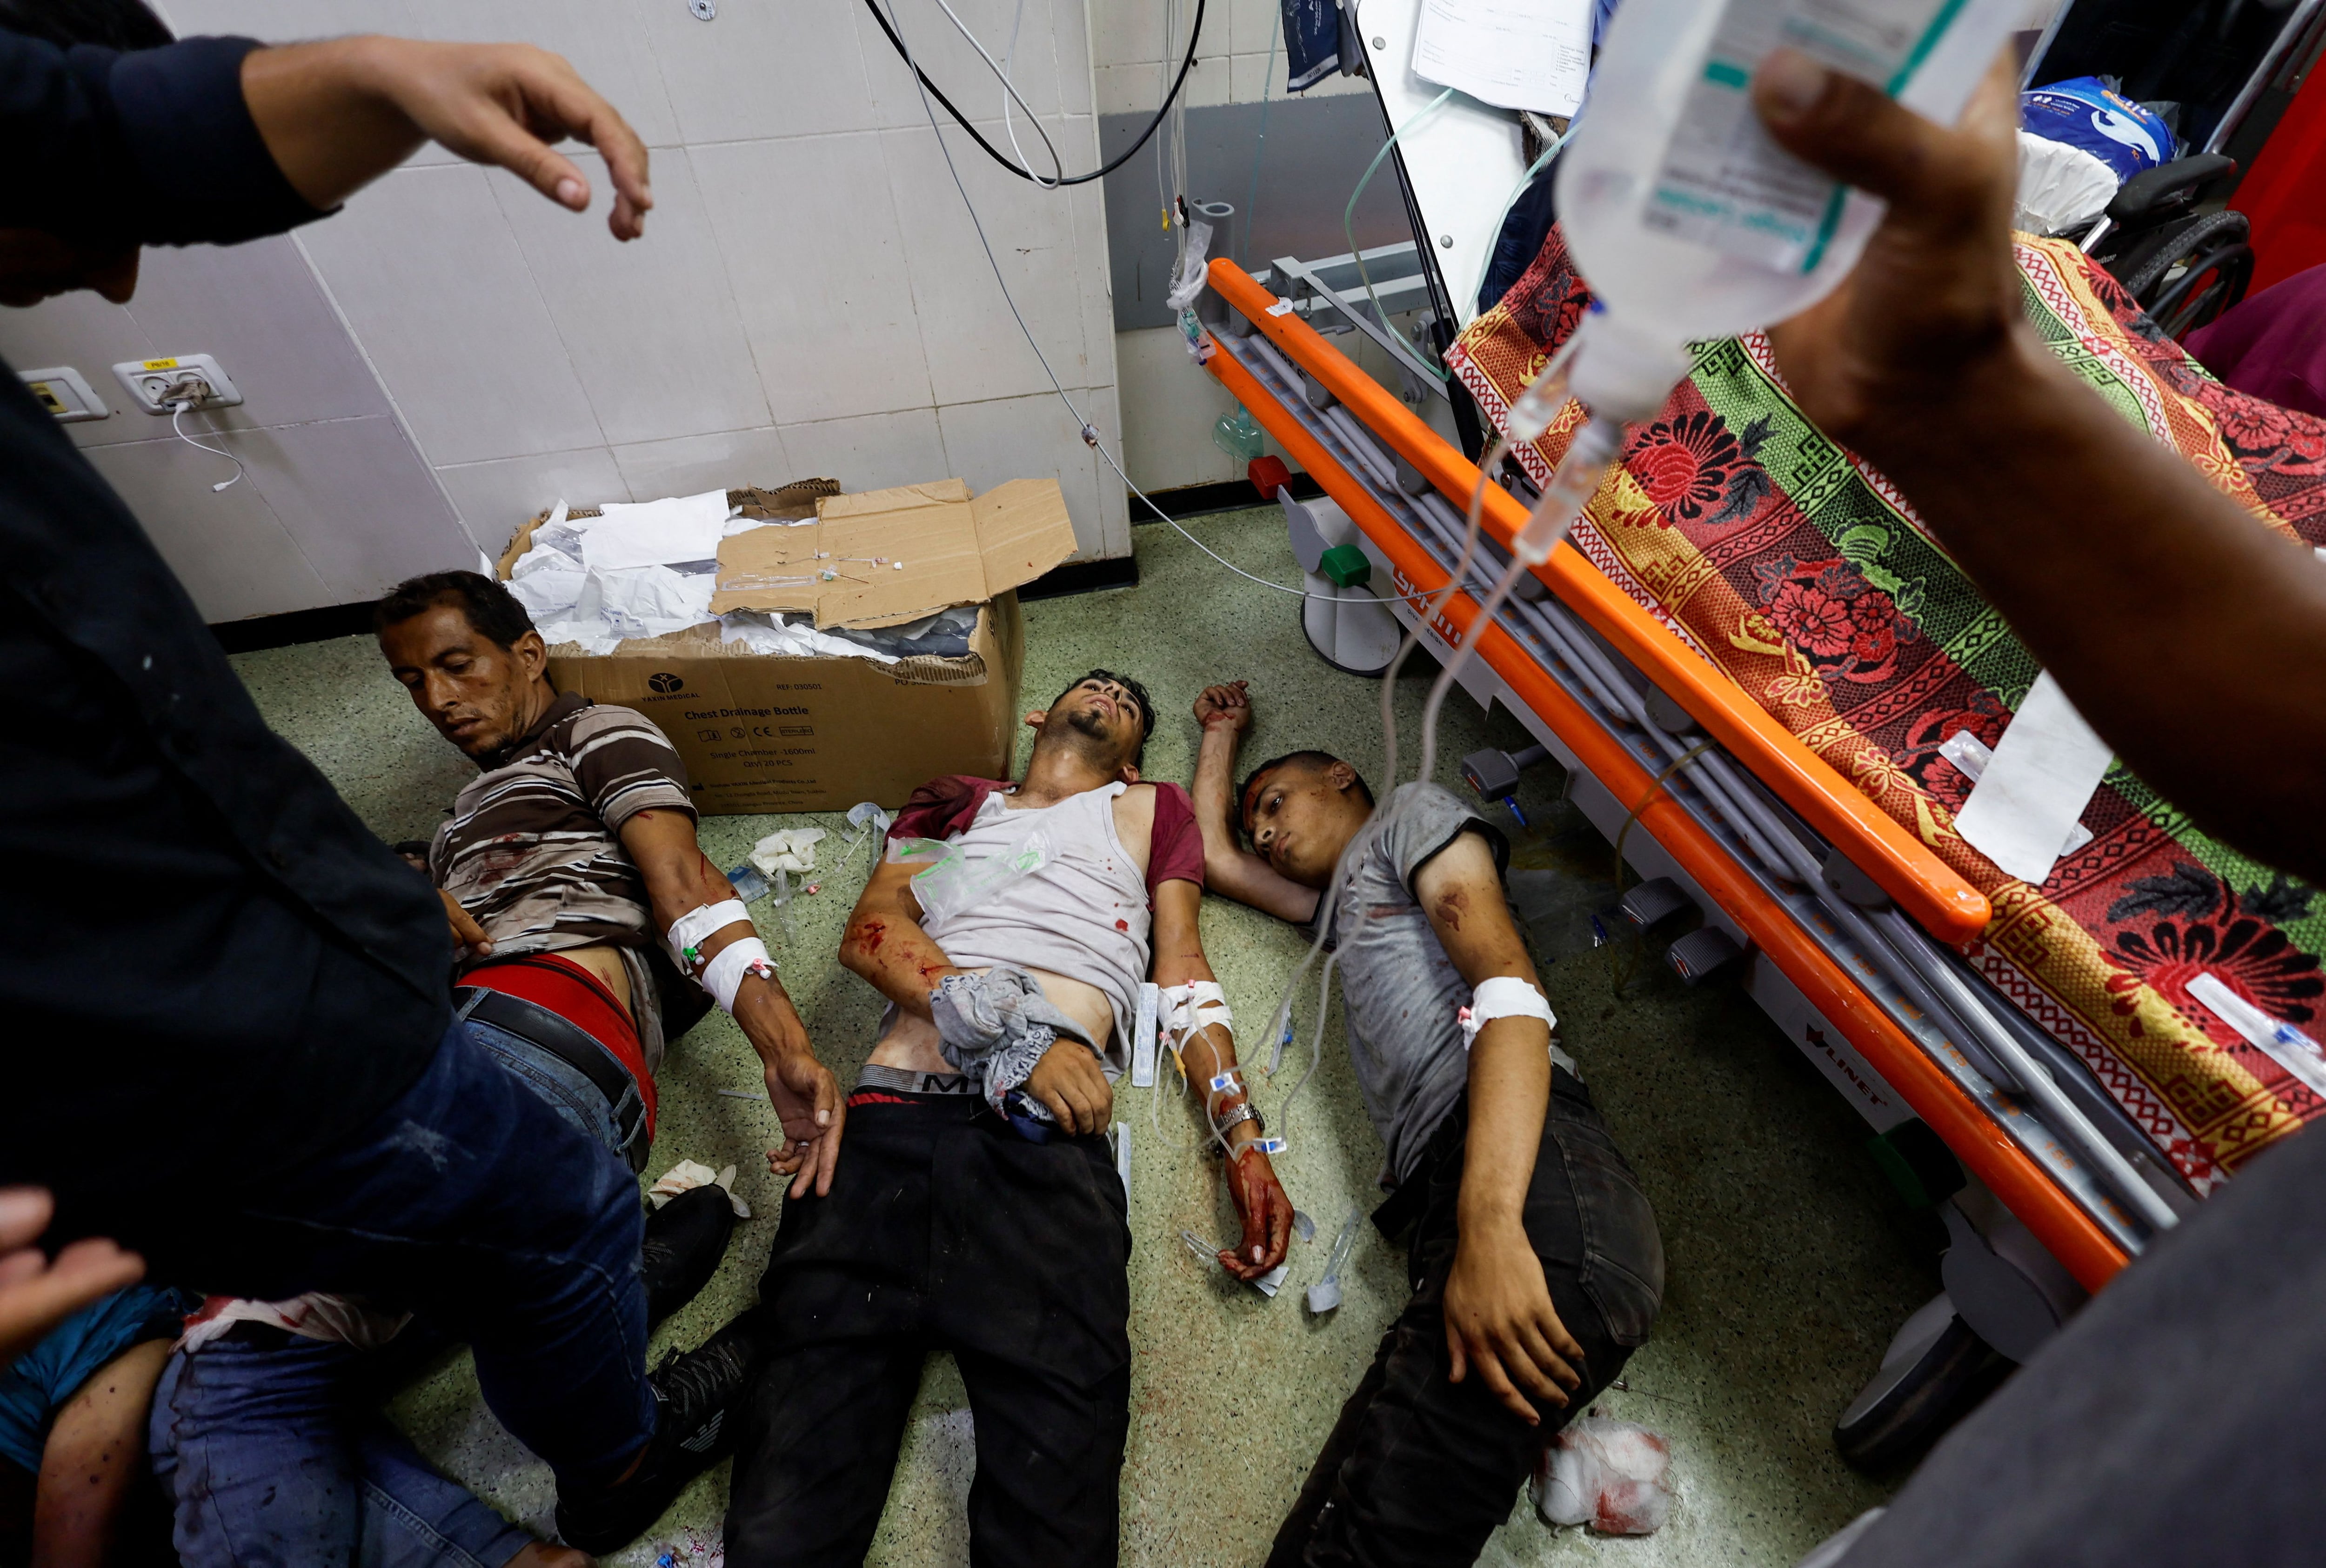 Tres palestinos gravemente heridos reciben asistencia sanitaria en el suelo del hospital Nasser, tras un ataque israelí, este martes en Jan Yunis.